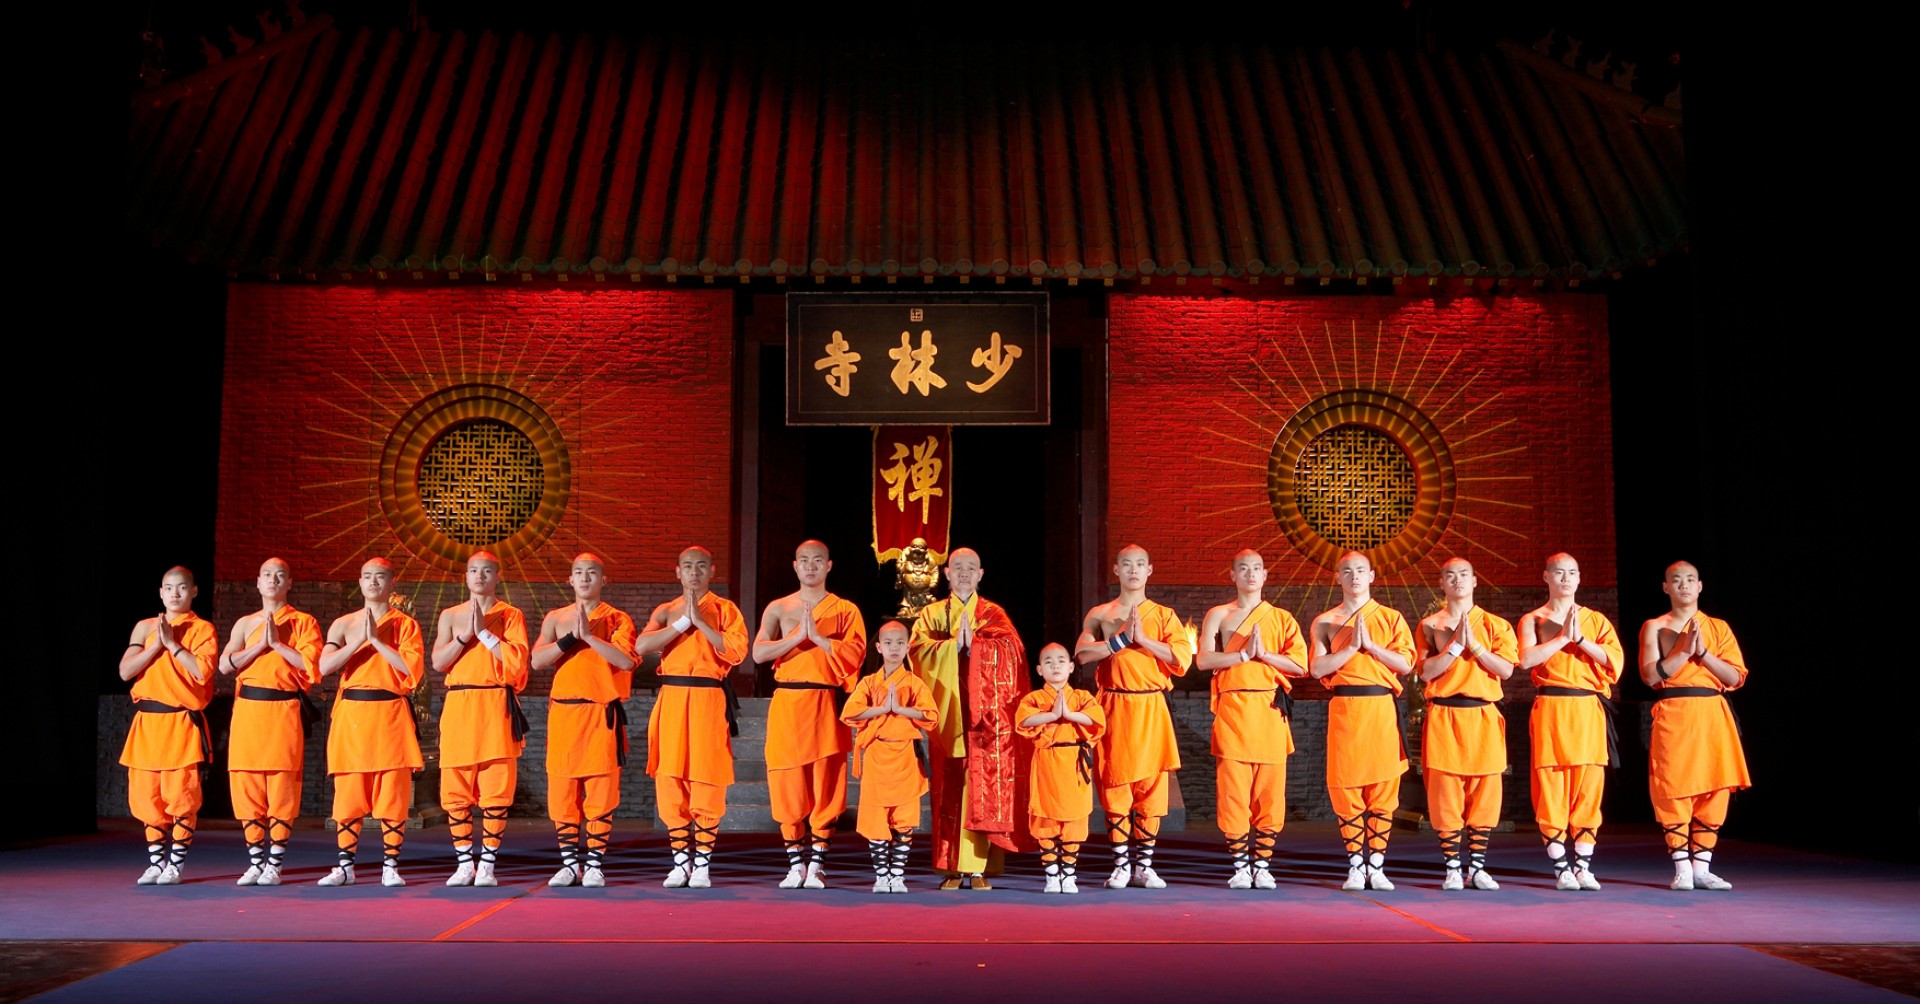 Nem hiányozhatnak a shaolin kung-fu szerzetesek sem az idei fesztiválról